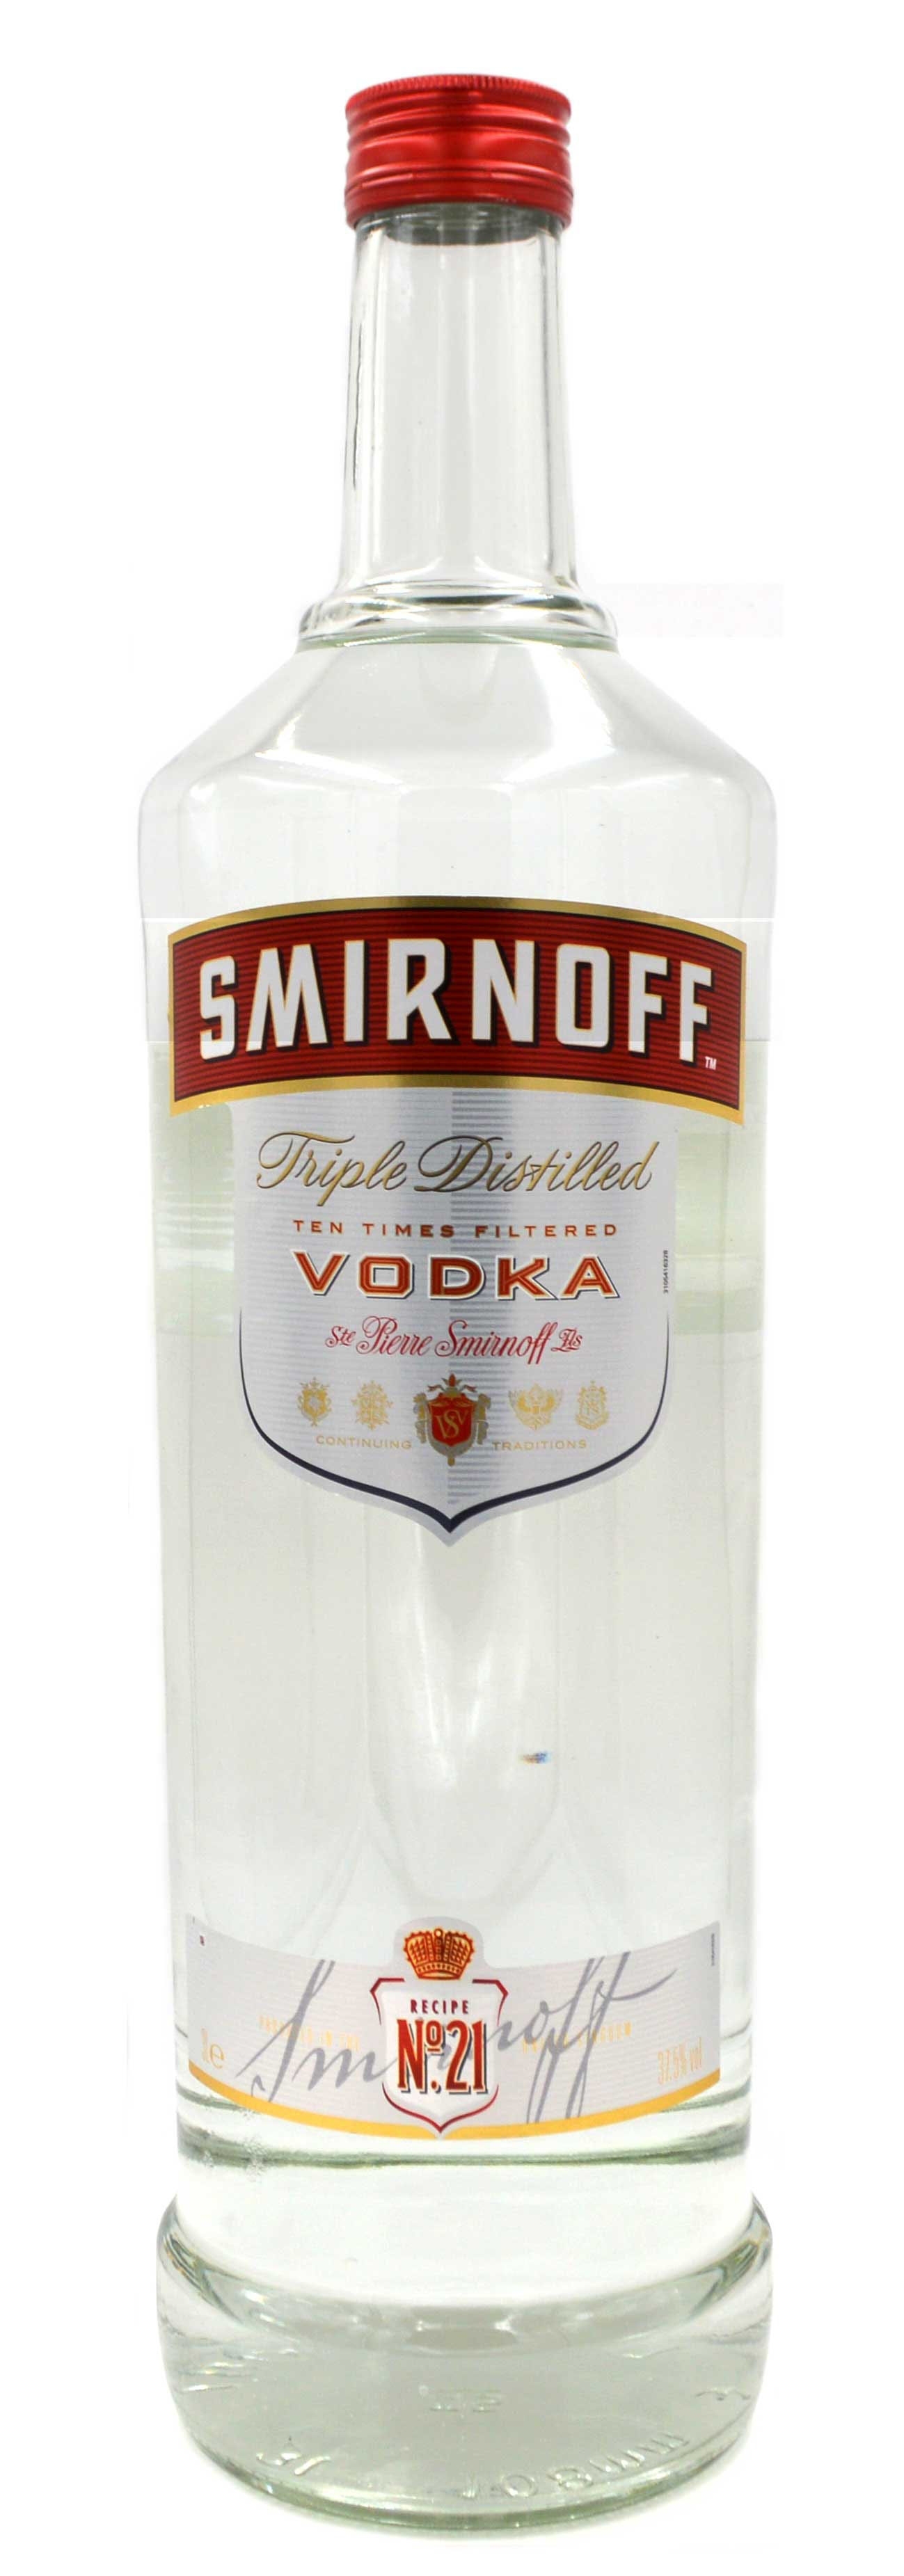 Grossflasche Red Wodka Smirnoff 3-fach 3-Liter - Label - Vodka destillierter